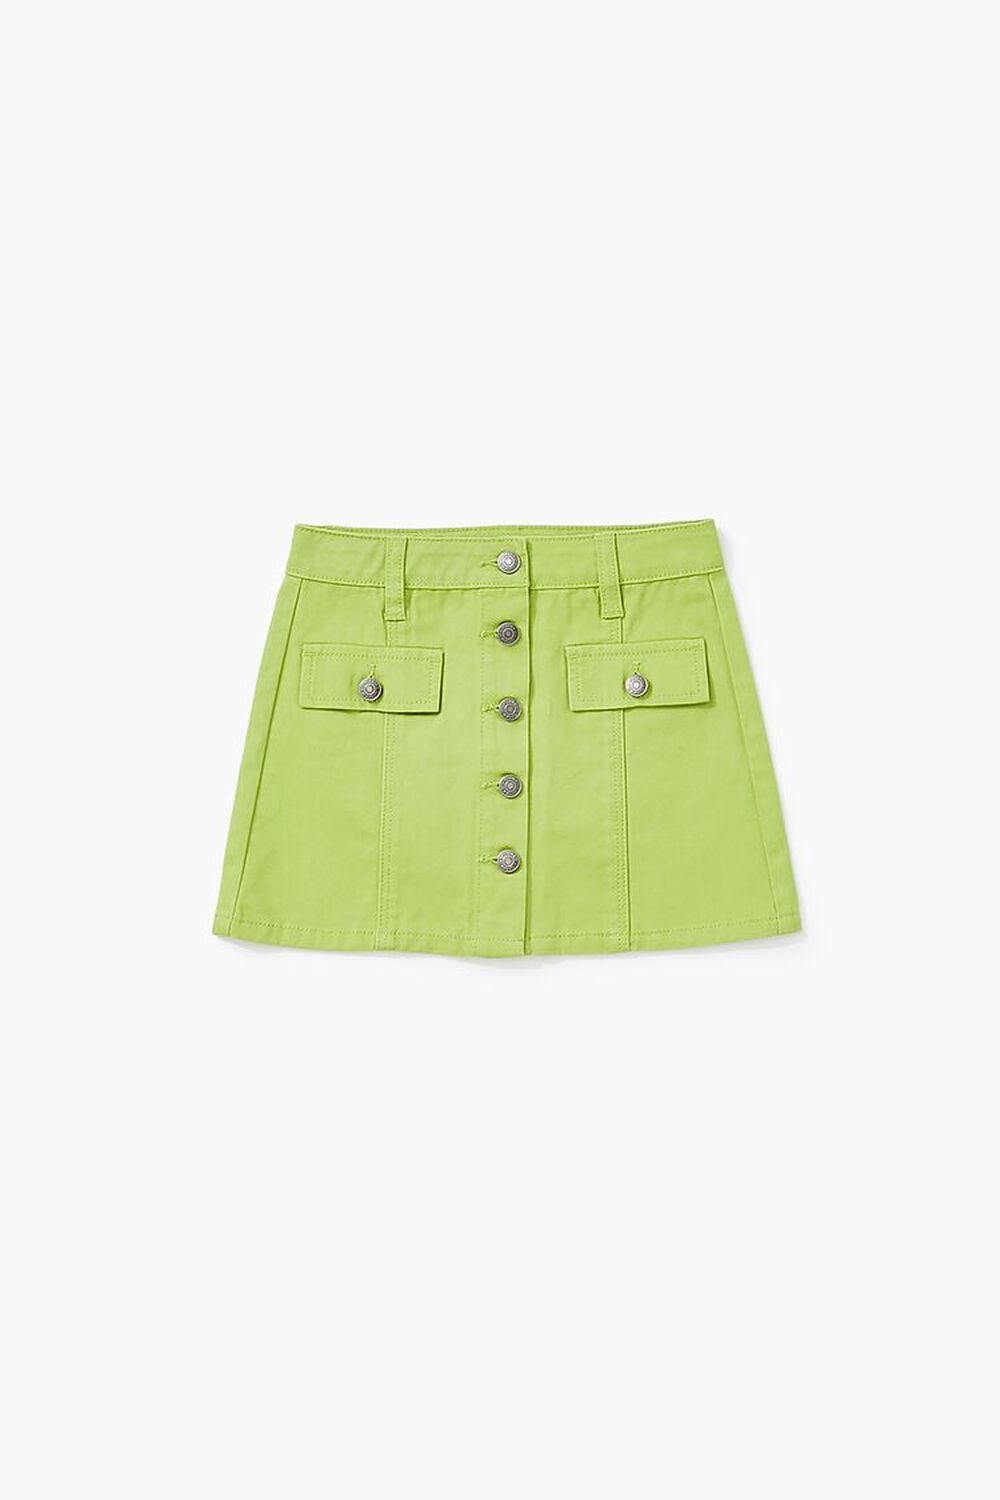 GREEN Girls Buttoned A-Line Skirt (Kids), image 1